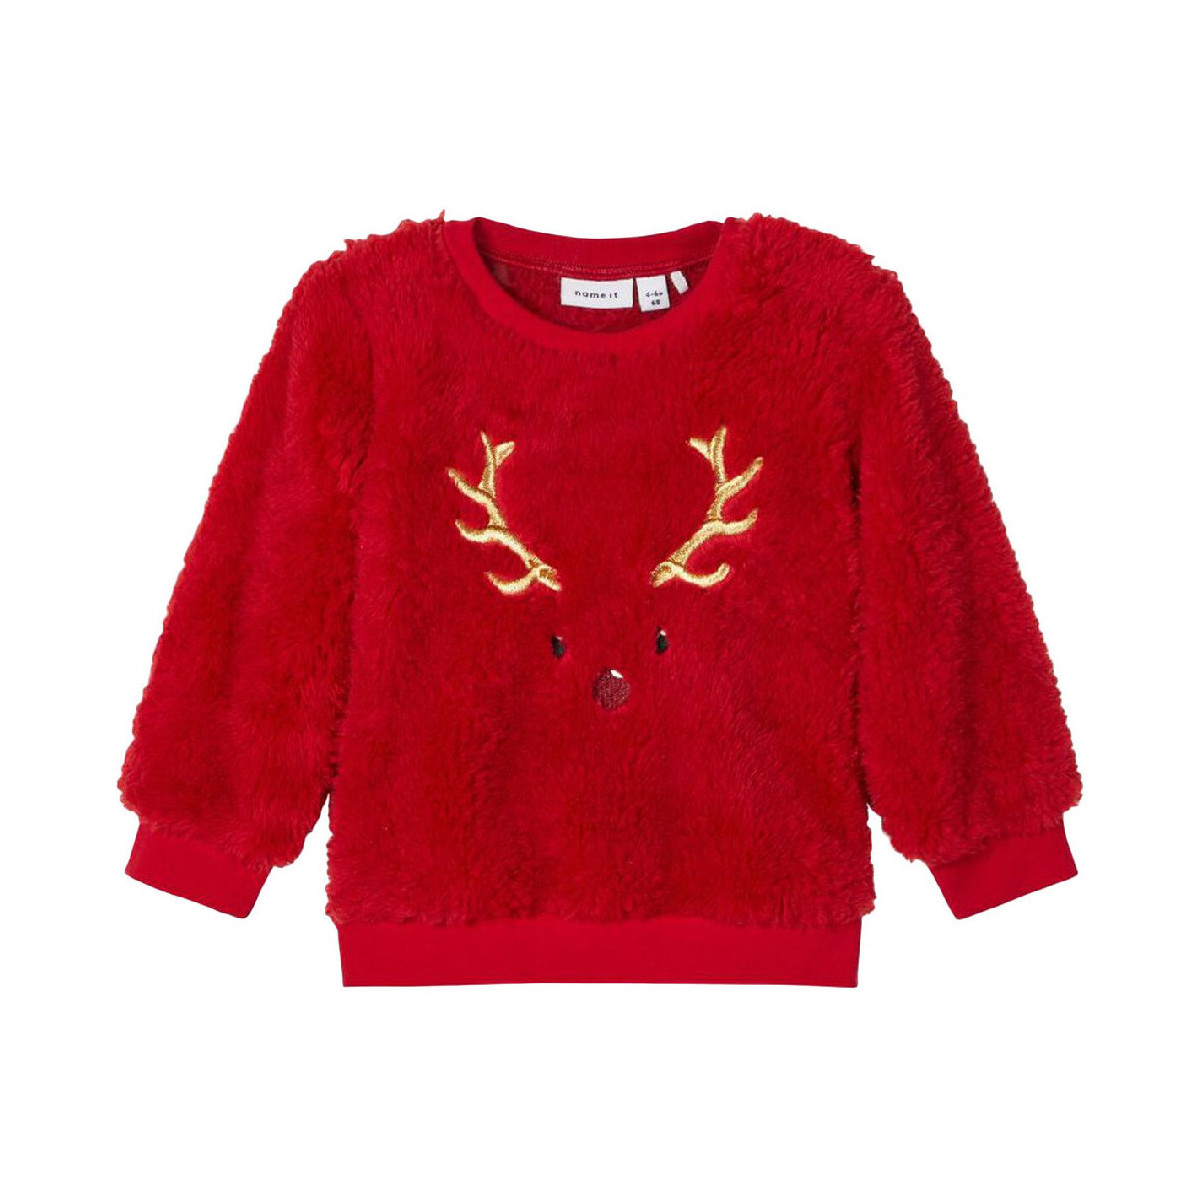 Textiel Meisjes Sweaters / Sweatshirts Name it  Rood